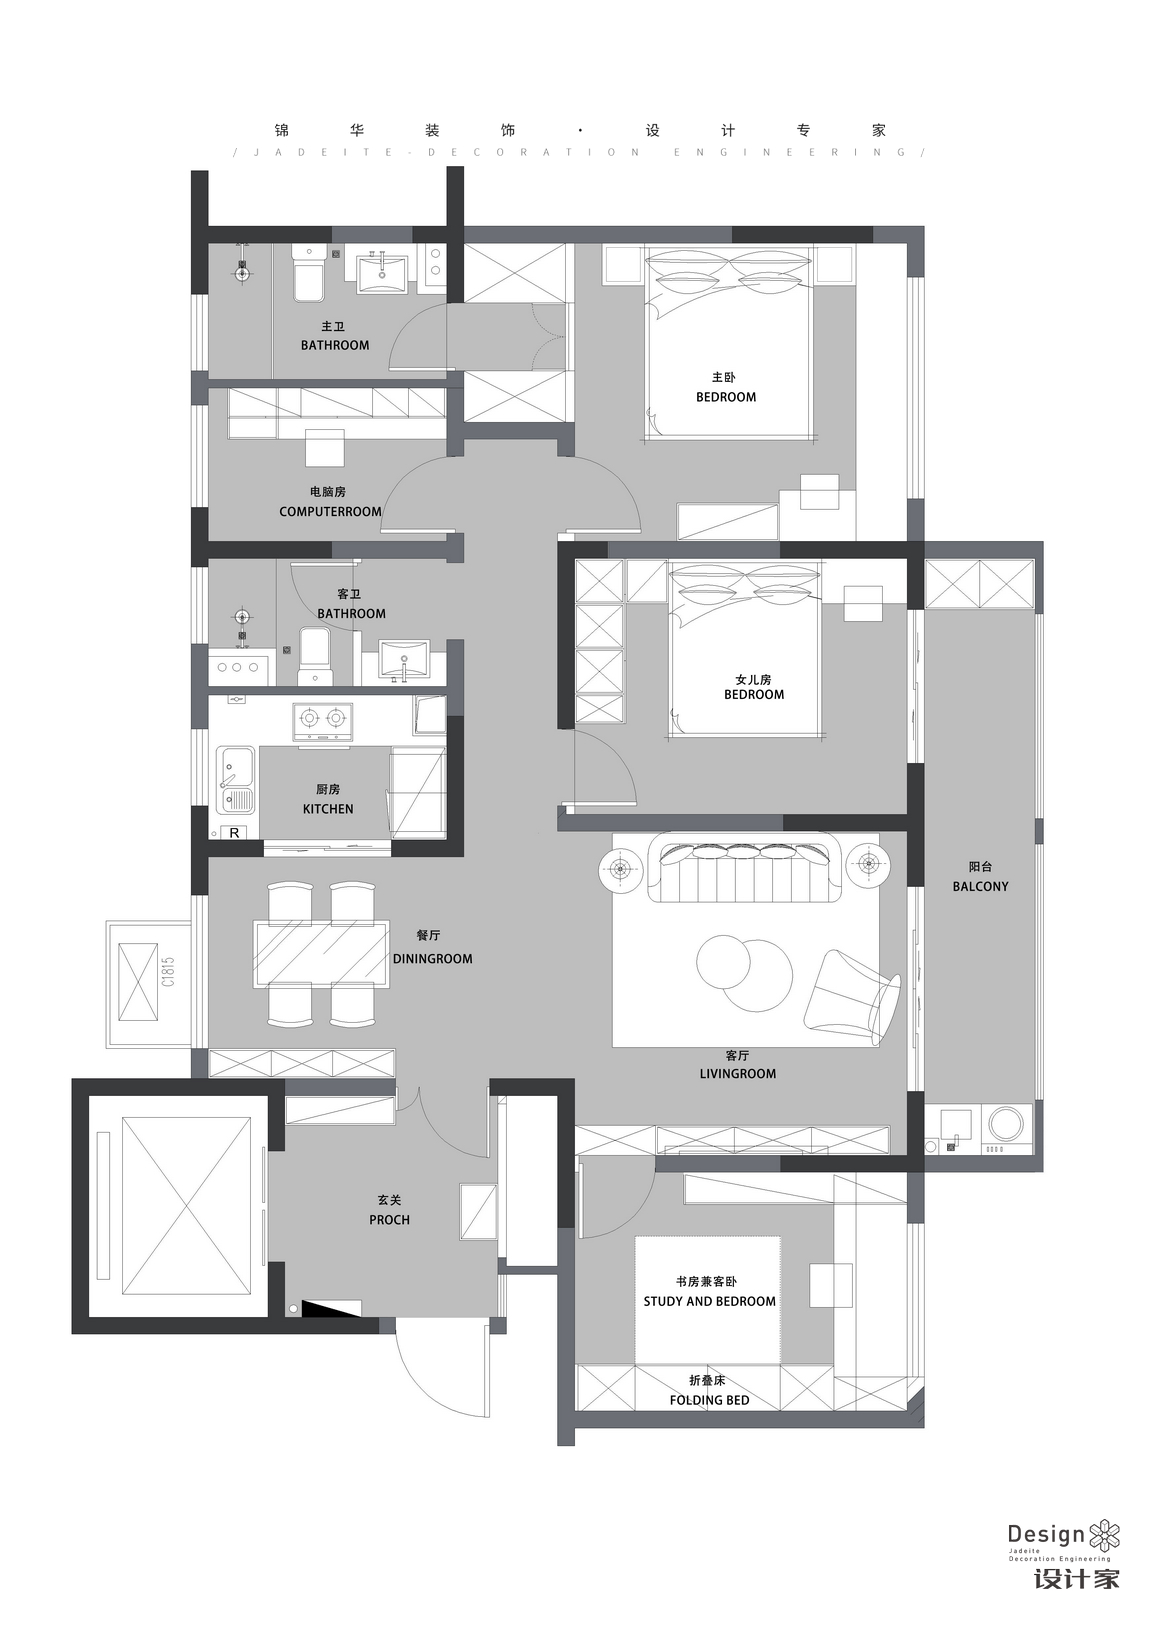 現代簡約-紫金悅峯-四室兩廳-130㎡裝修-四室兩廳-現代簡約